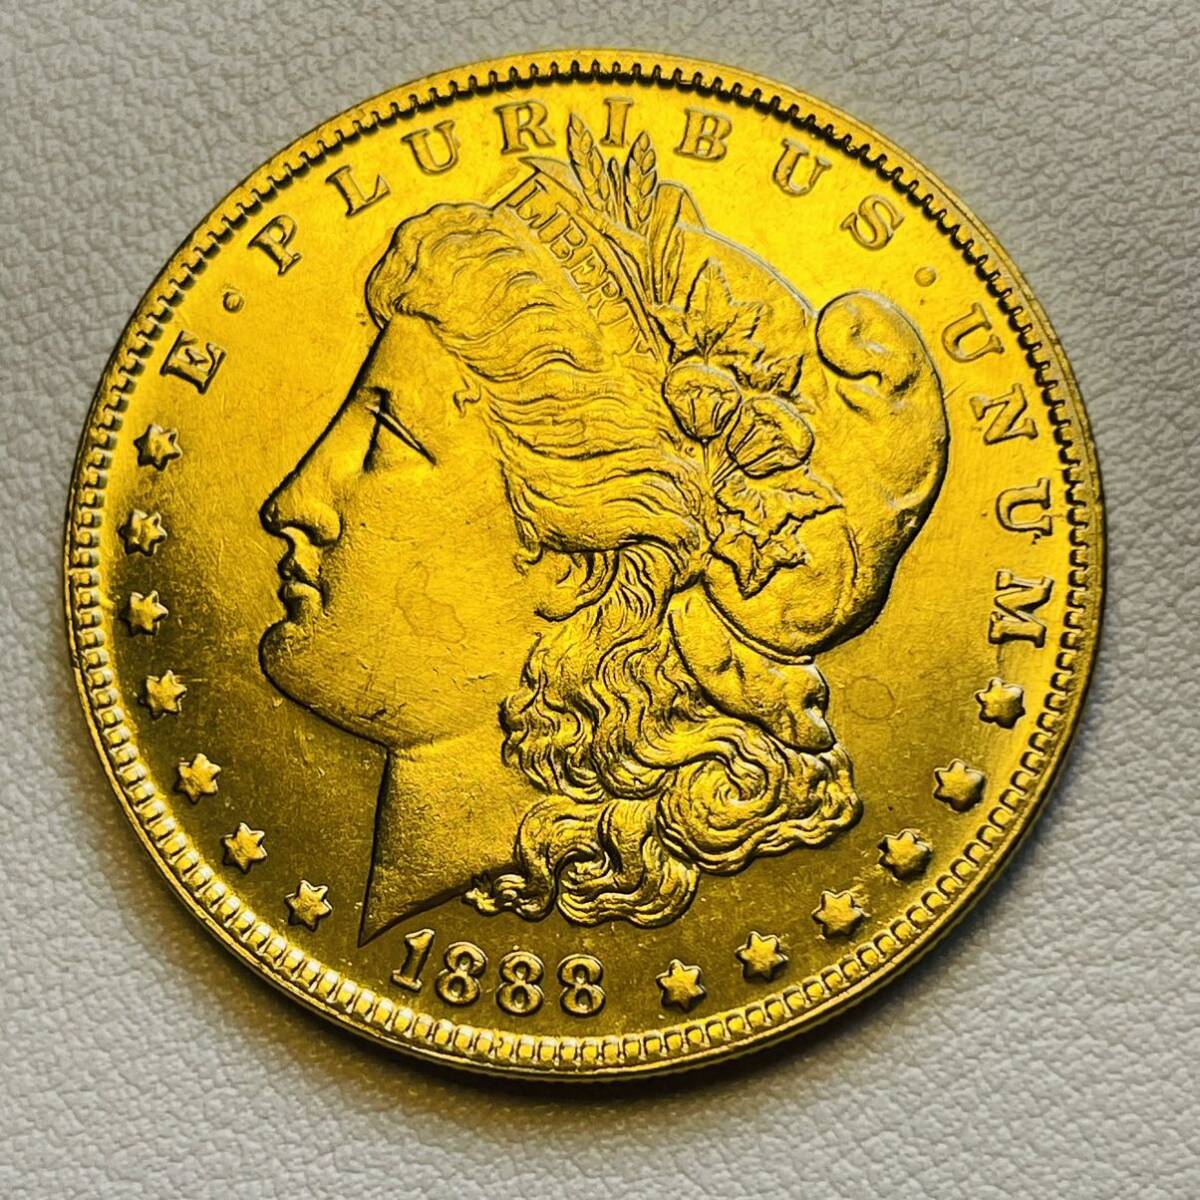 アメリカ 硬貨 古銭 自由の女神 1888年 リバティ イーグル モルガン 13の星 コイン 重21.79g_画像1